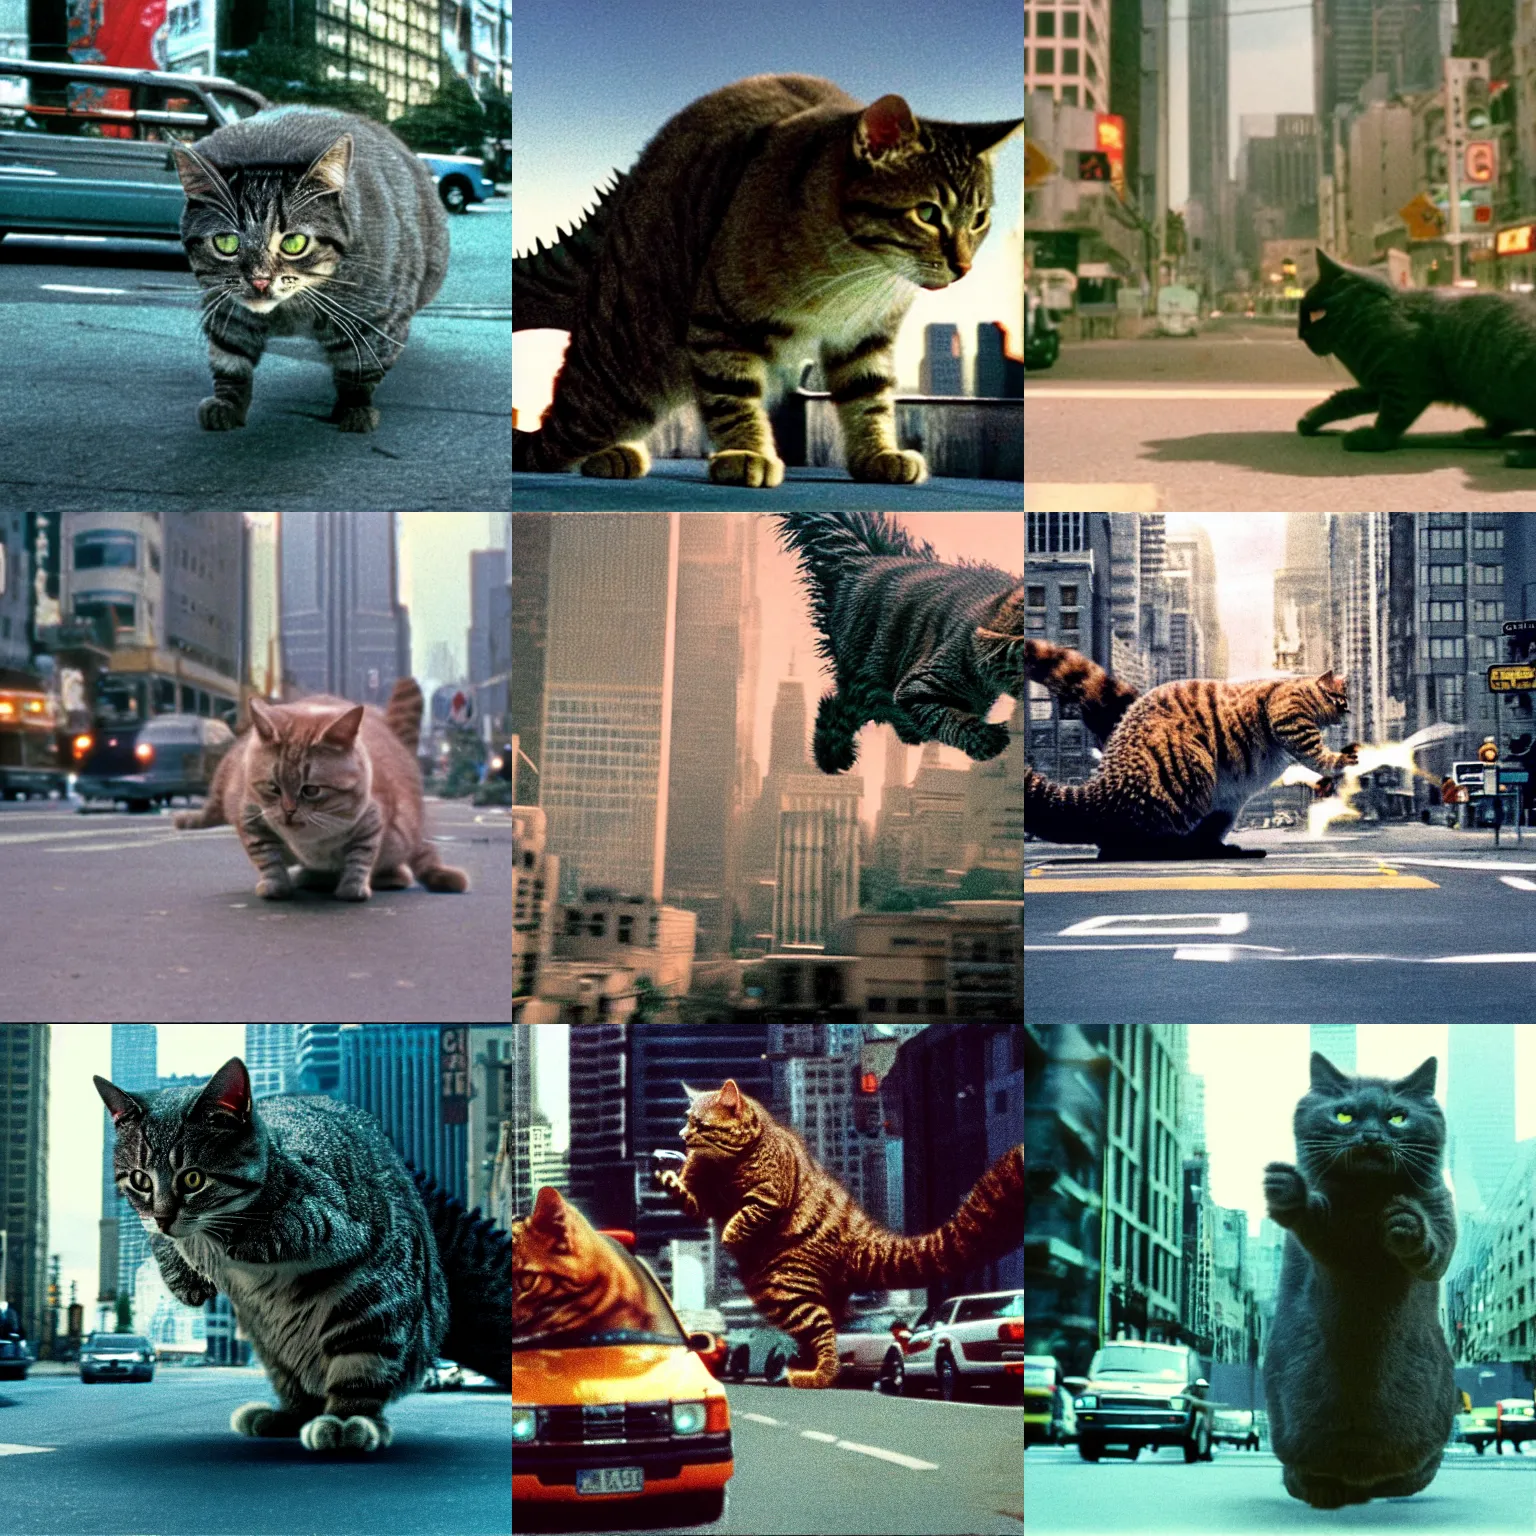 Prompt: cinestill of cat godzilla rampaging in big city, disaster movie